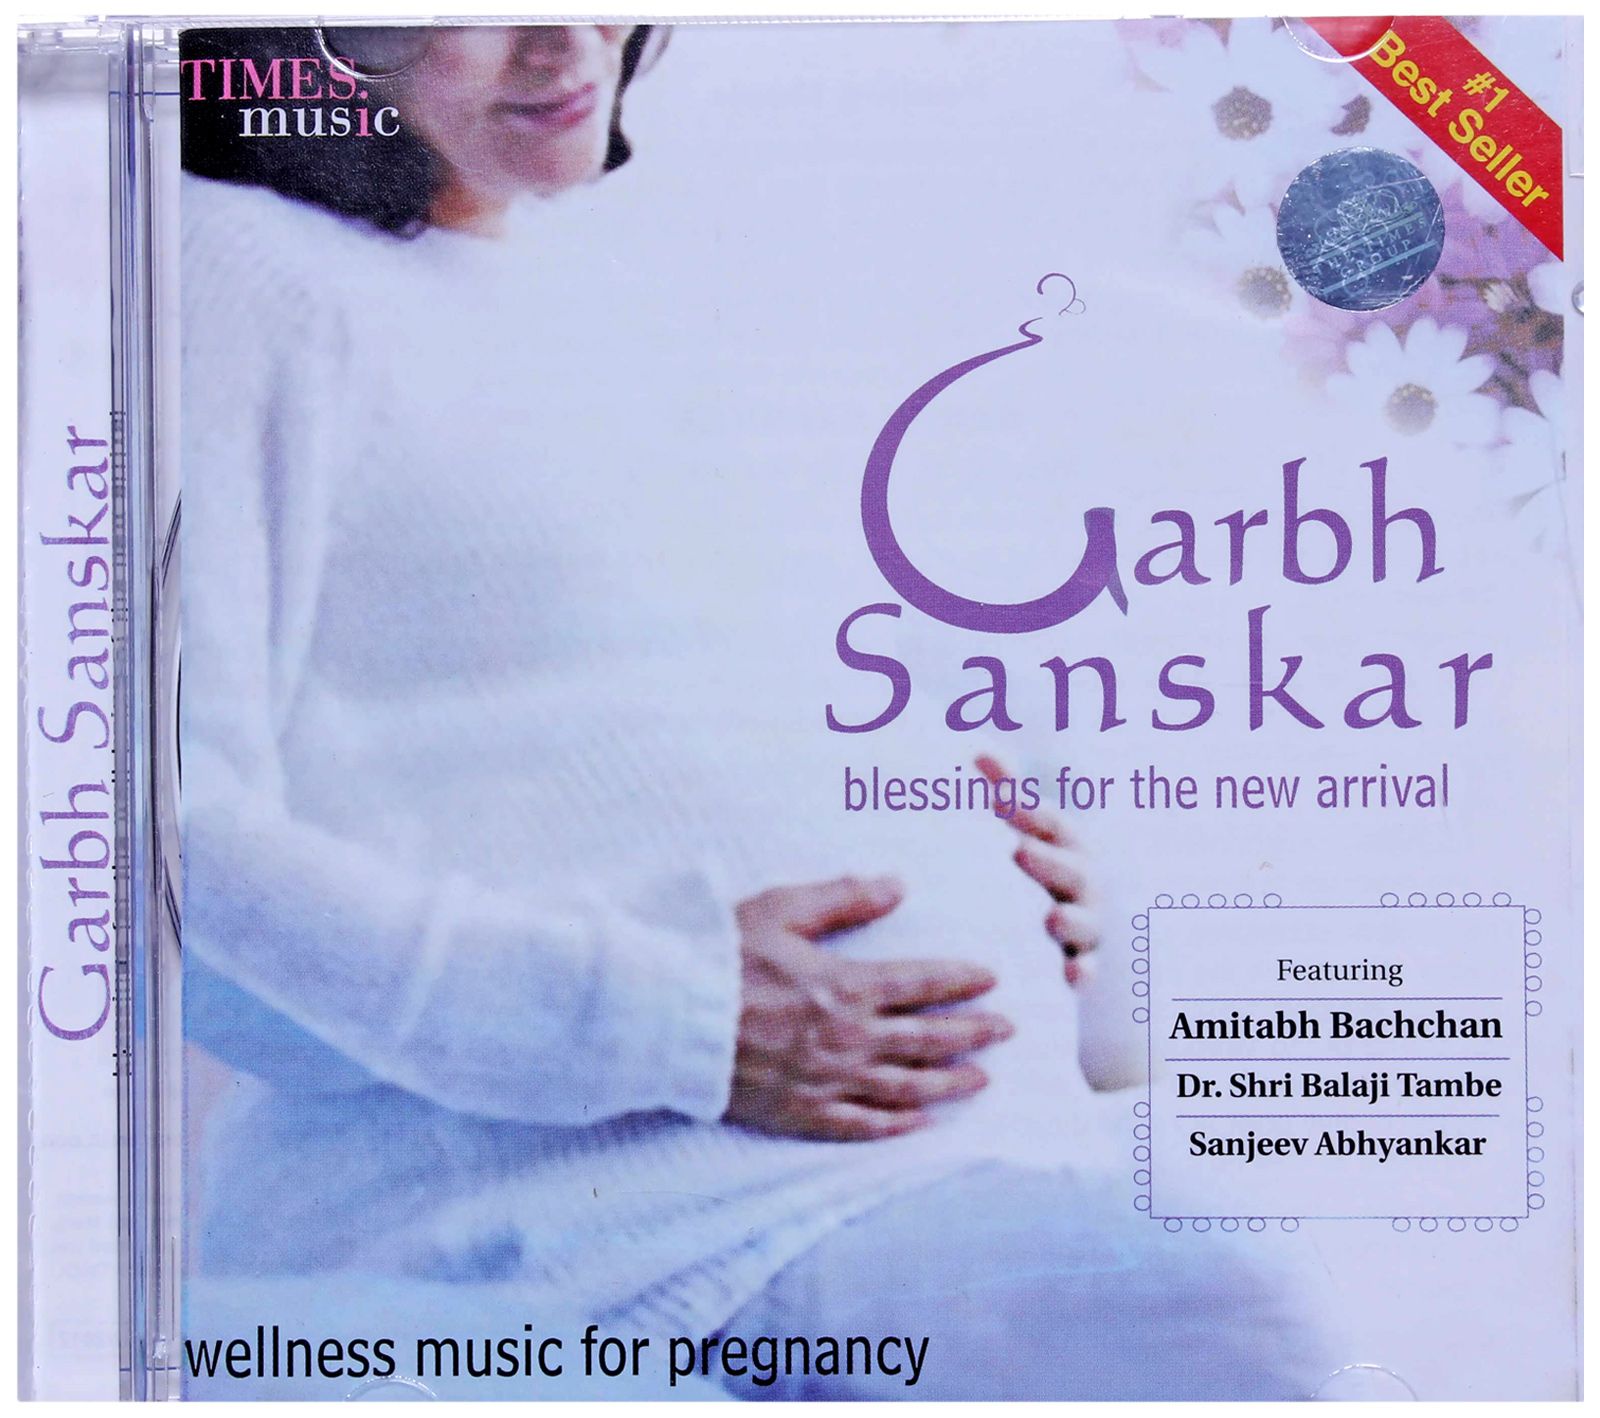 Times Music - Garbh Sanskar CD